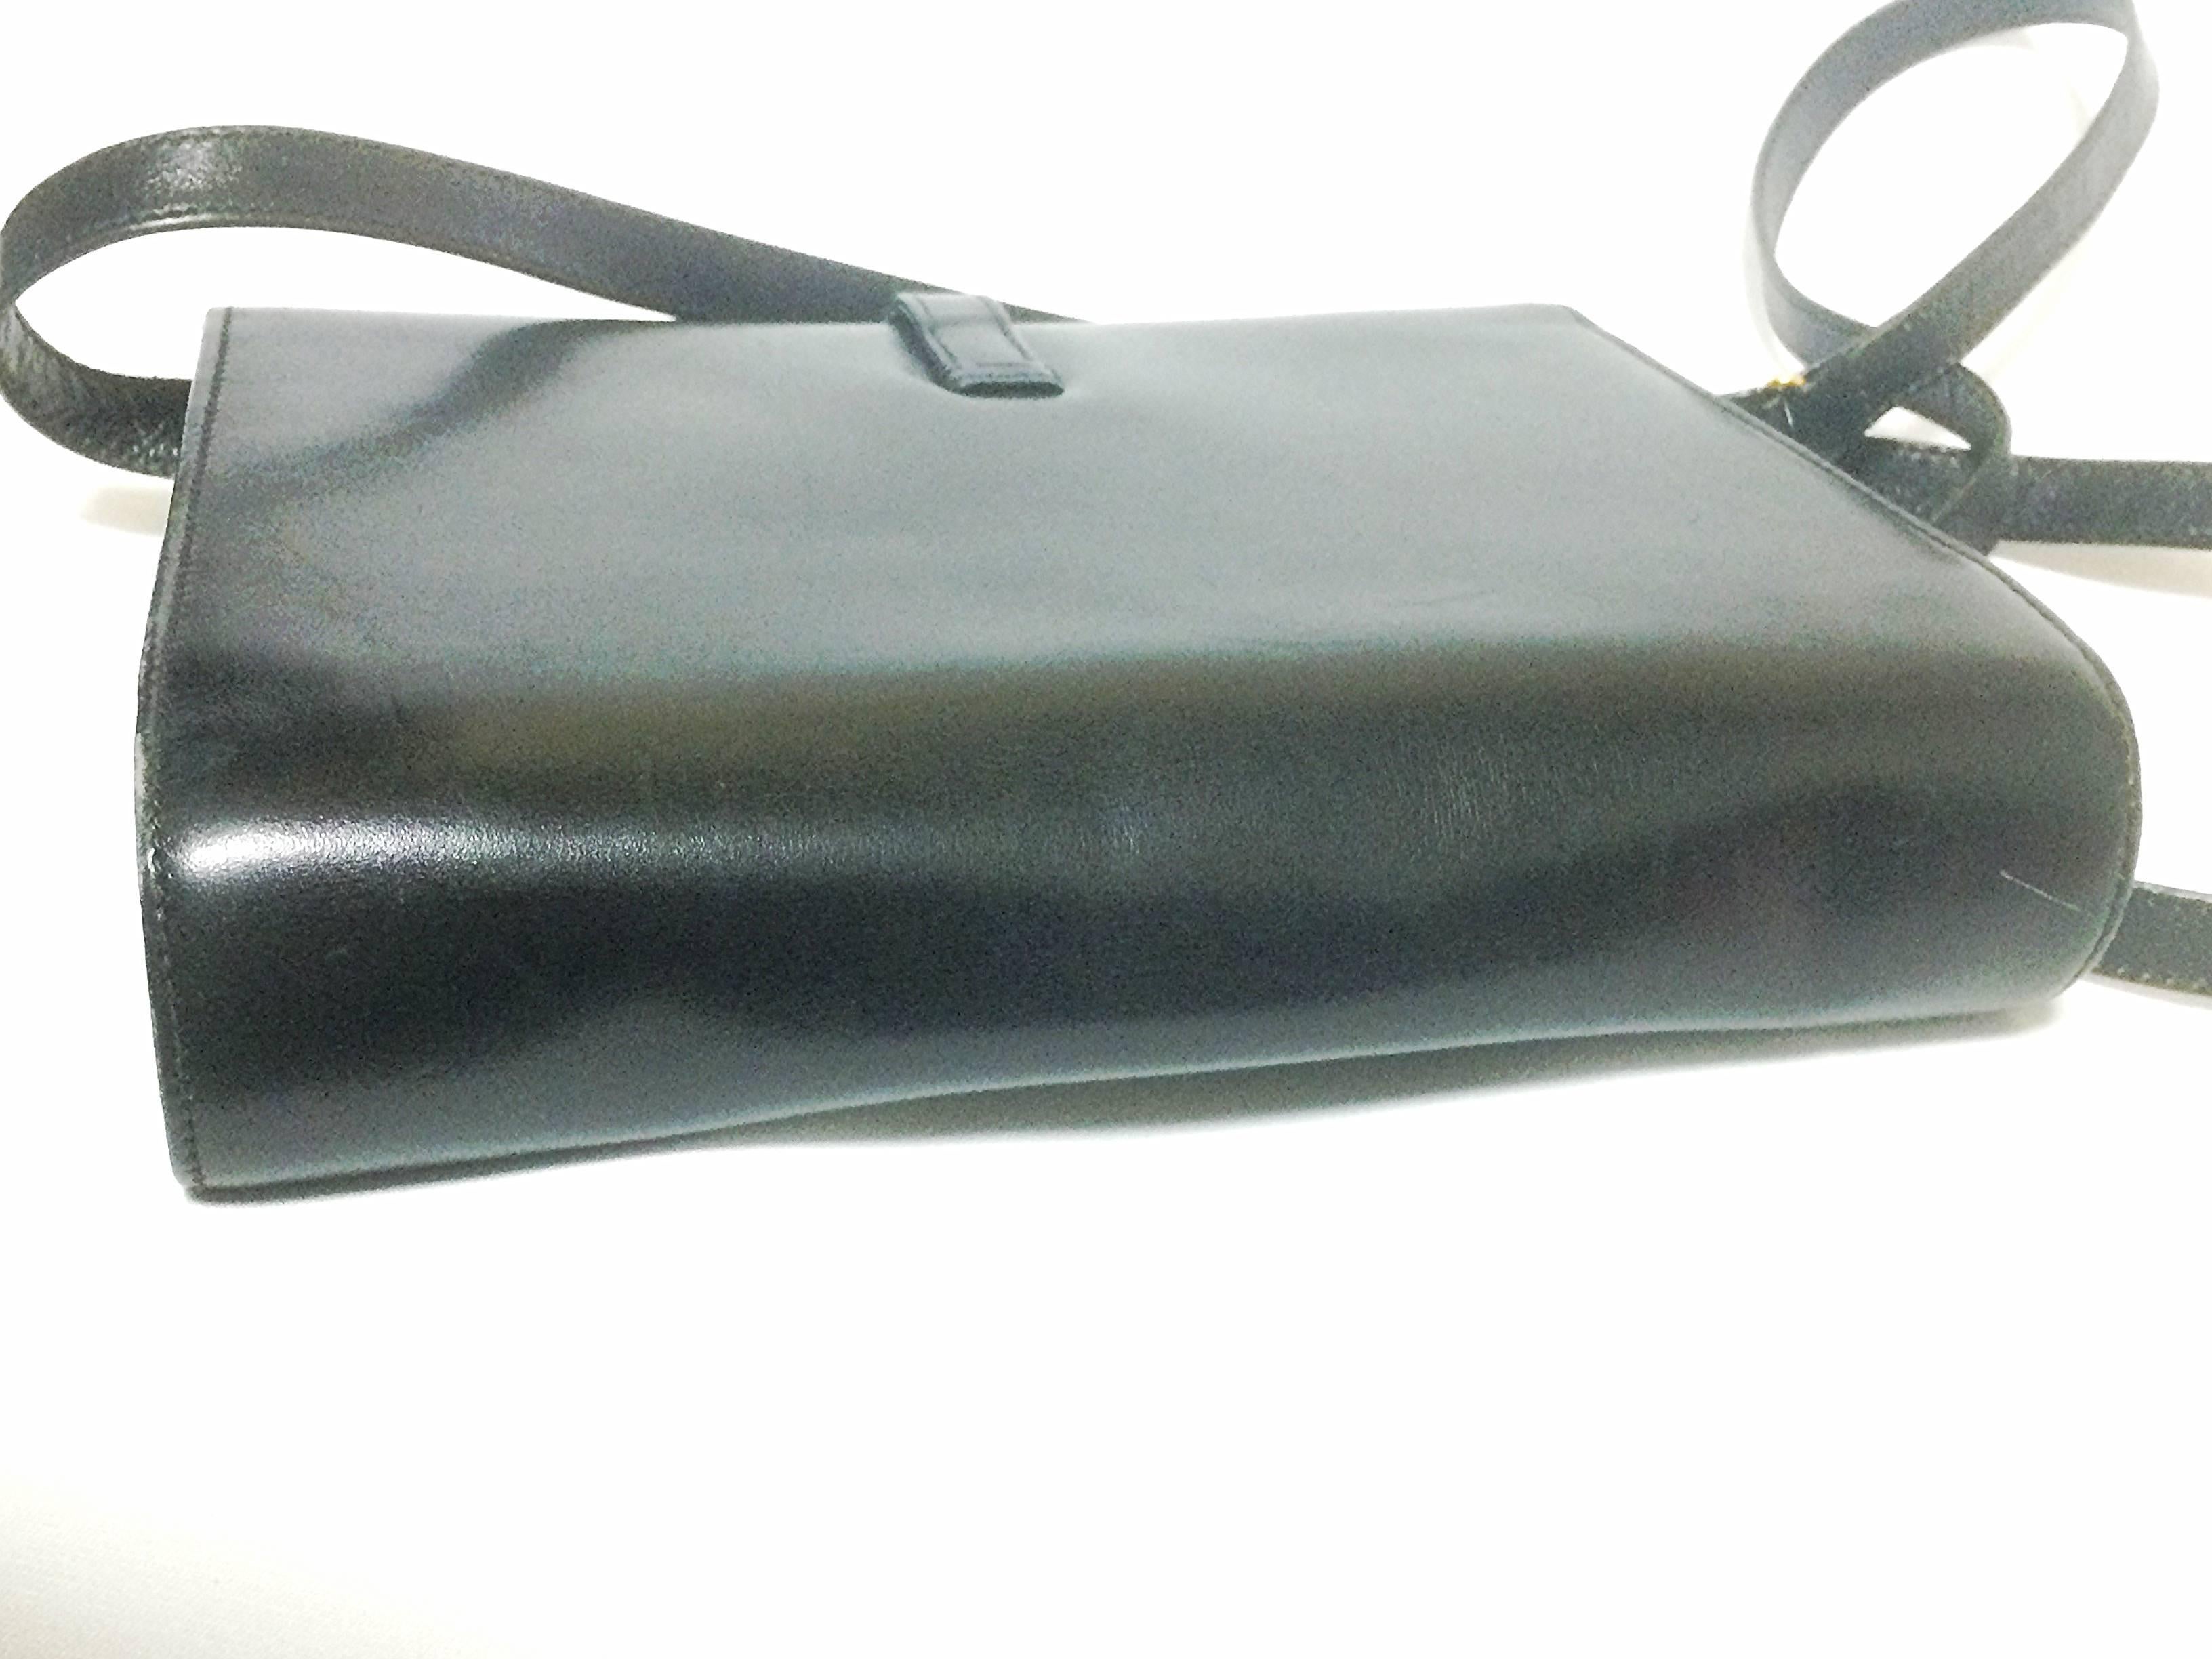 Black 80’s Vintage Gucci black leather clutch shoulder bag with logo motif closure.